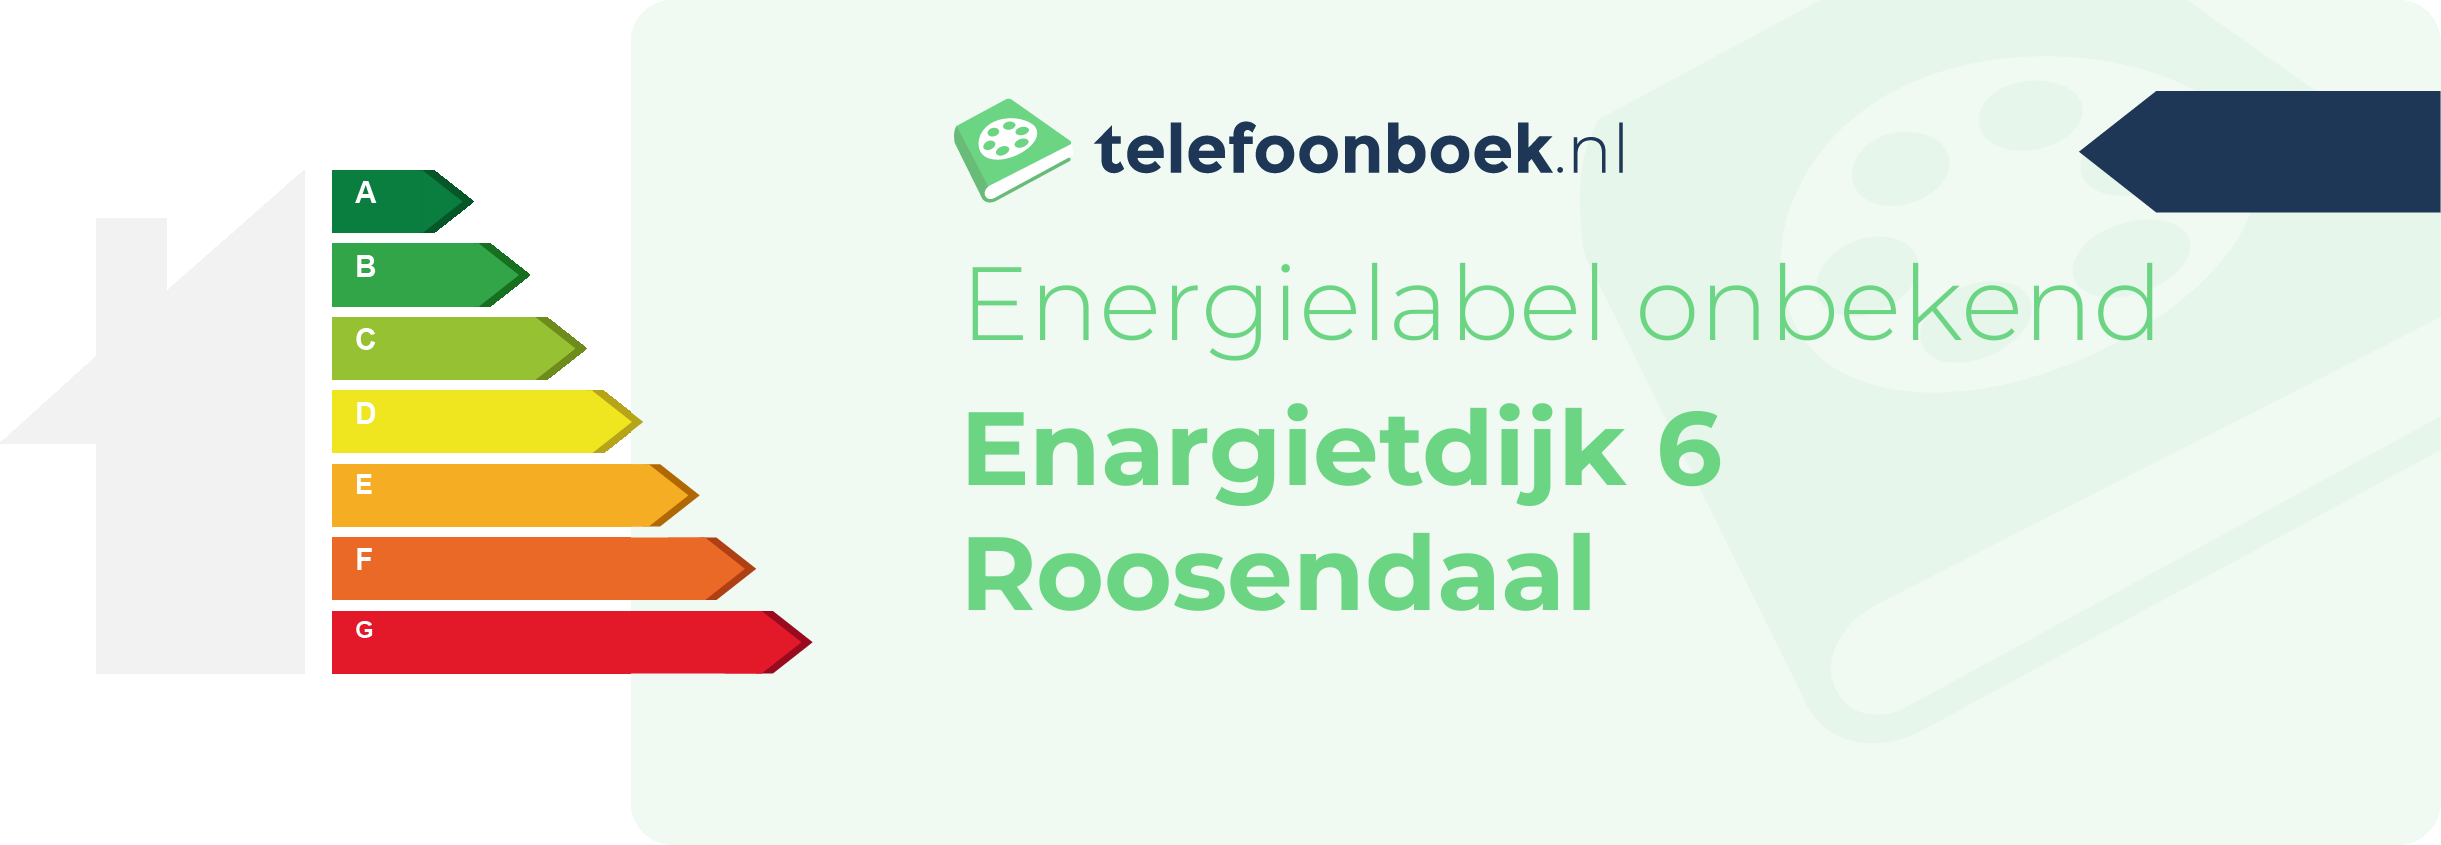 Energielabel Enargietdijk 6 Roosendaal